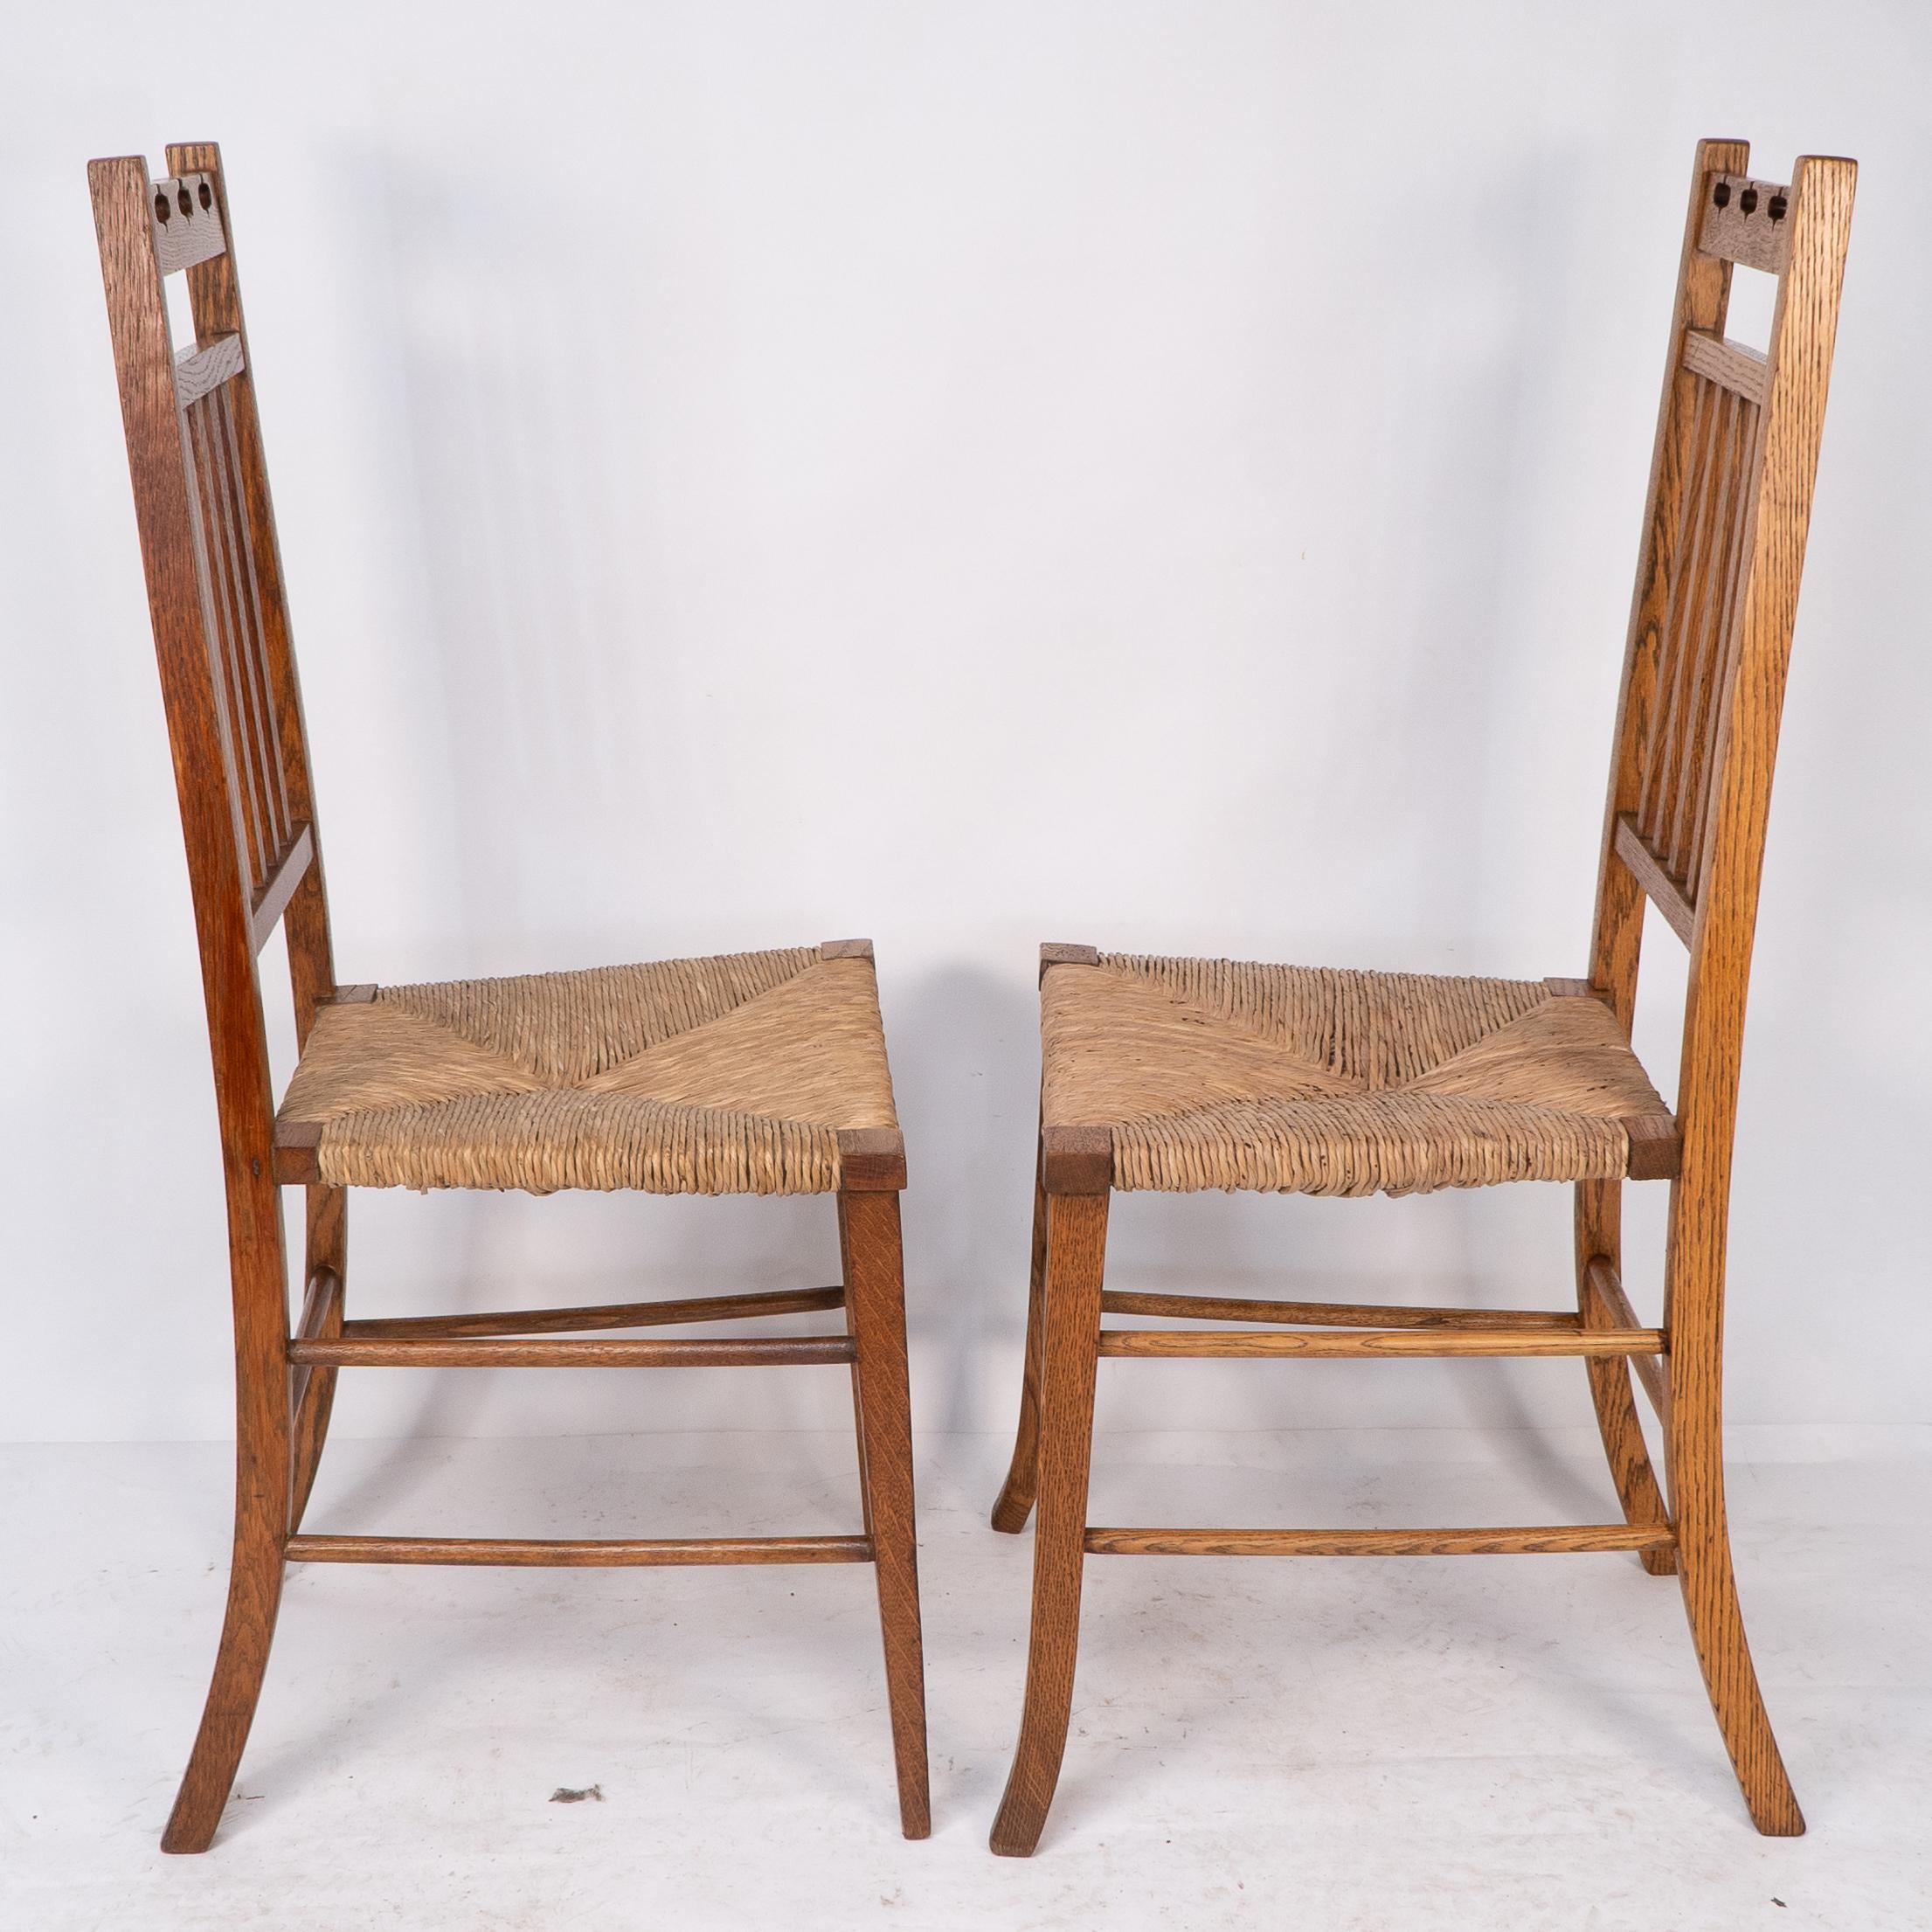 E A Taylor a attribué à Wylie and Lochhead une paire de chaises d'appoint ou de chambre à coucher en jonc. L'une a les pieds avant droits et l'autre a les pieds avant légèrement évasés. Les deux chaises ont été restaurées par des professionnels et